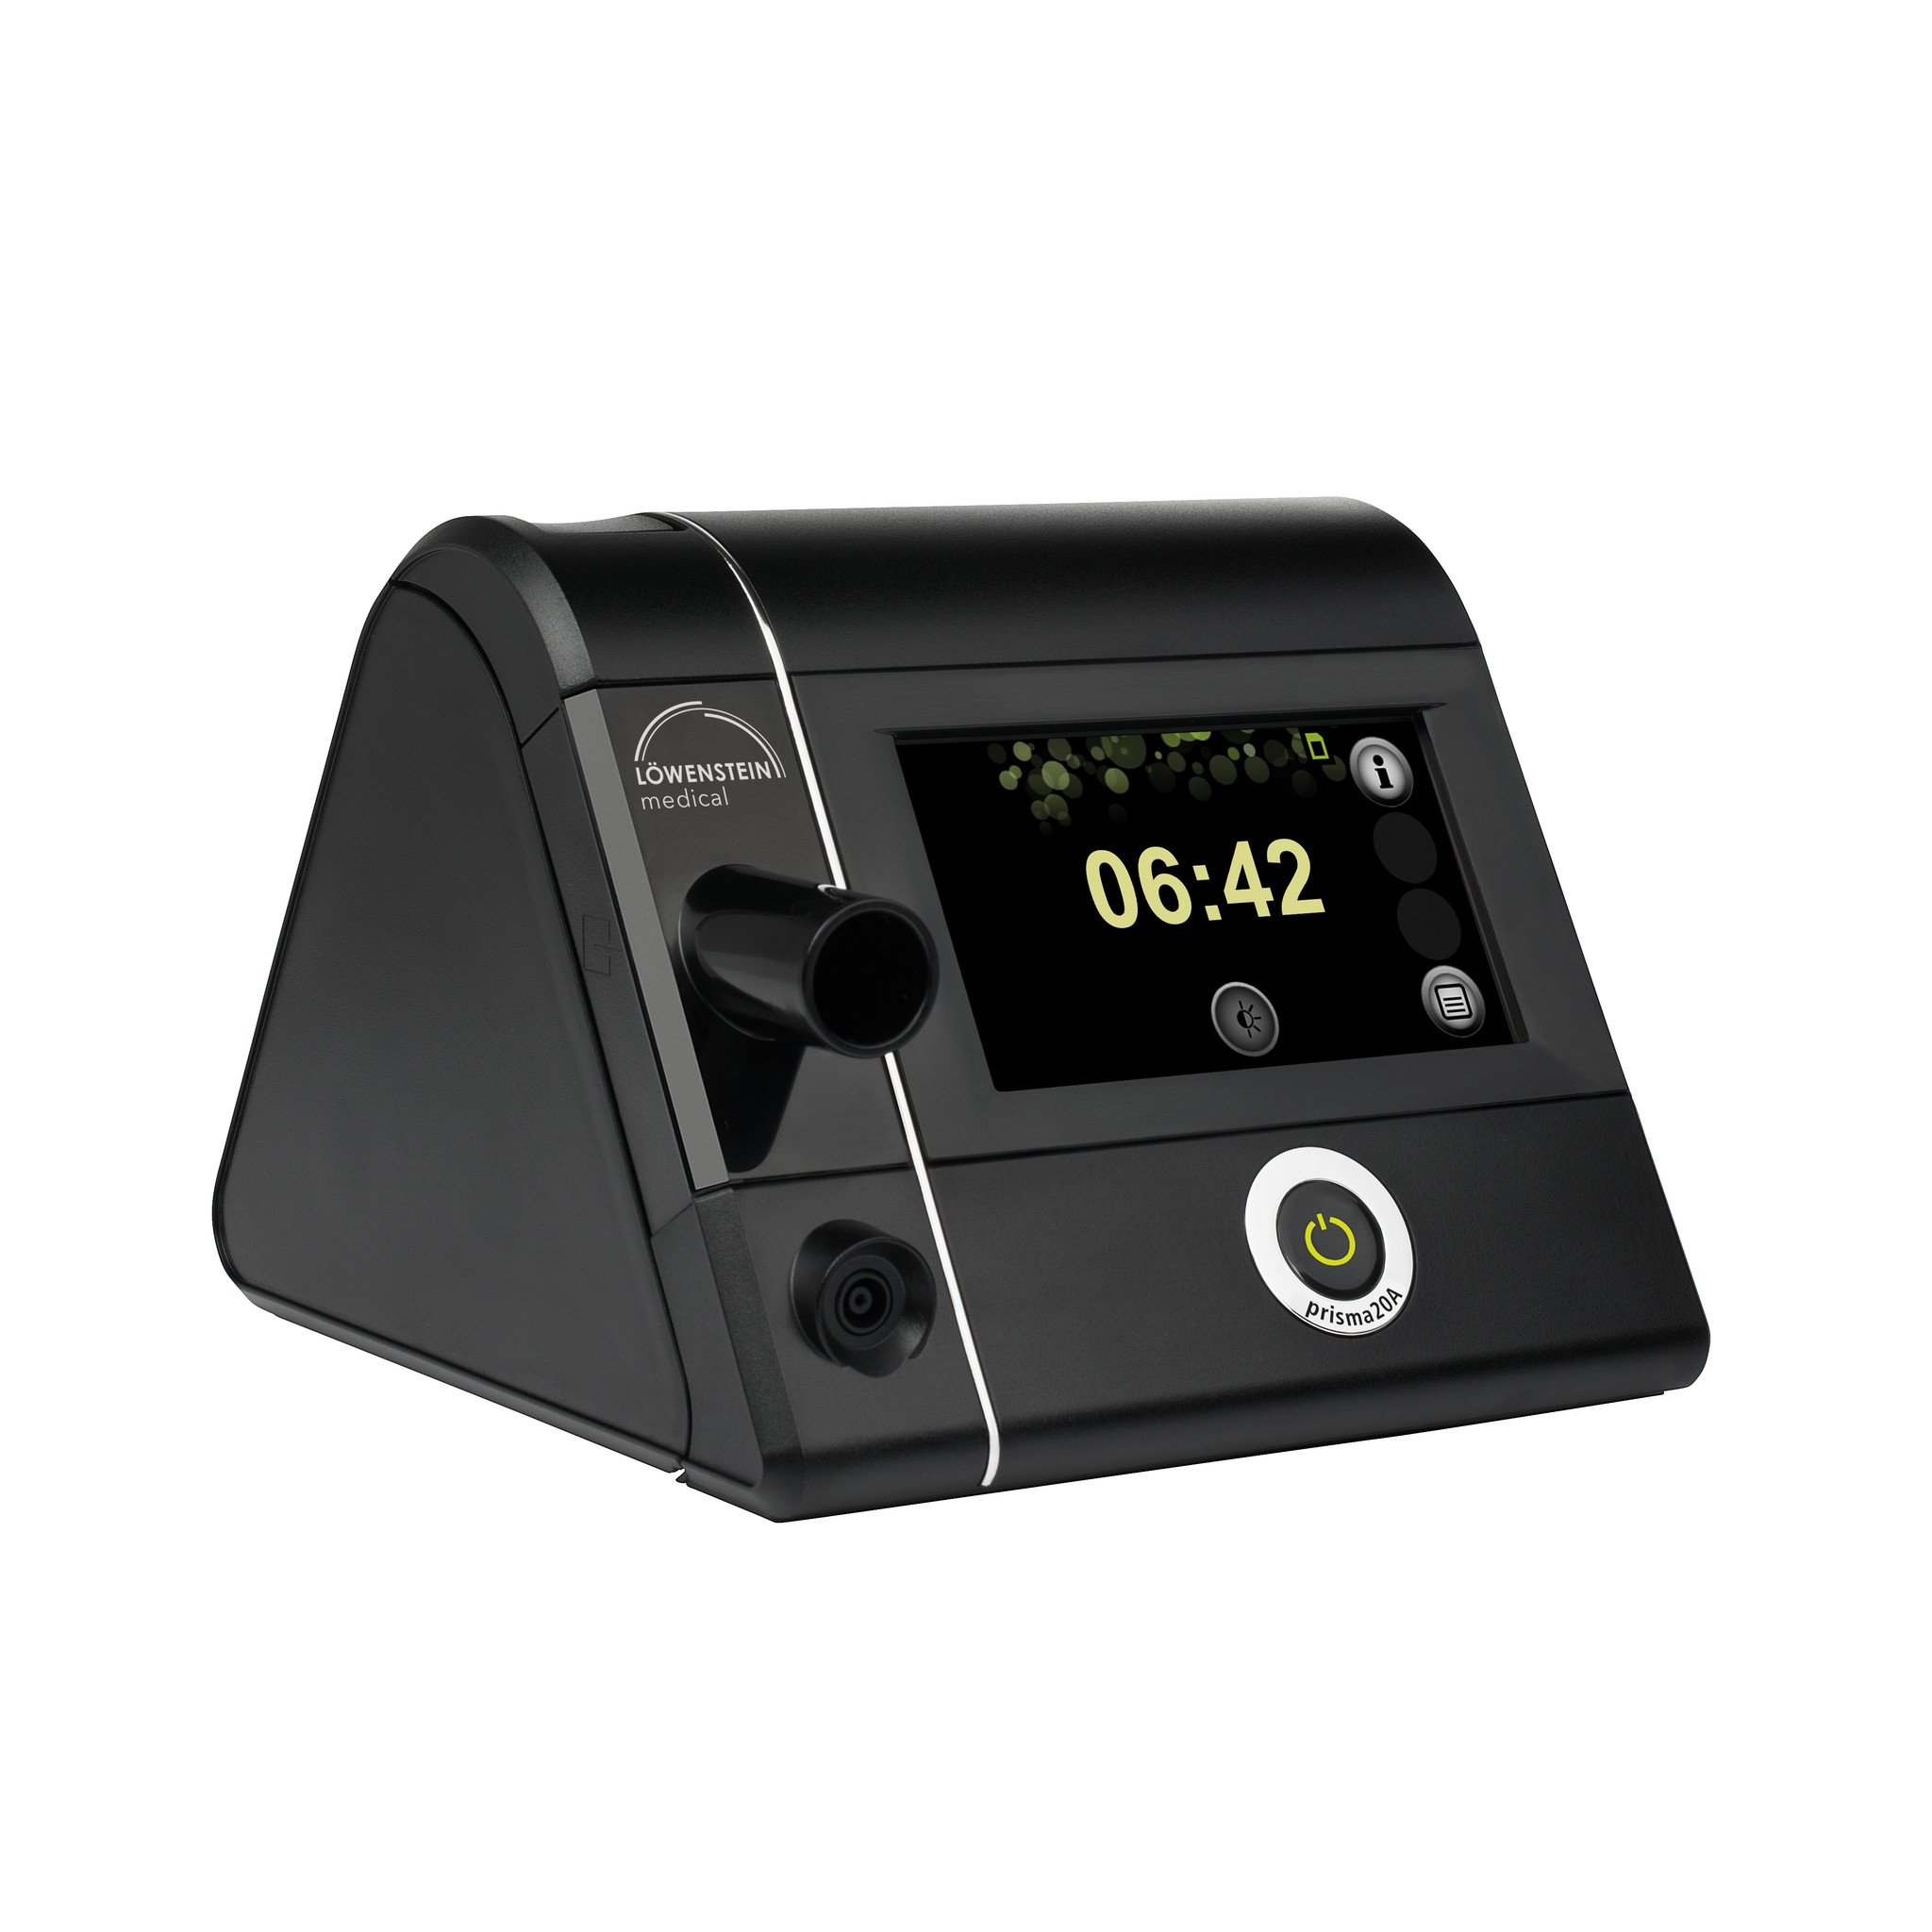 30 Cm H2O Auto CPAP Ventilator Machine